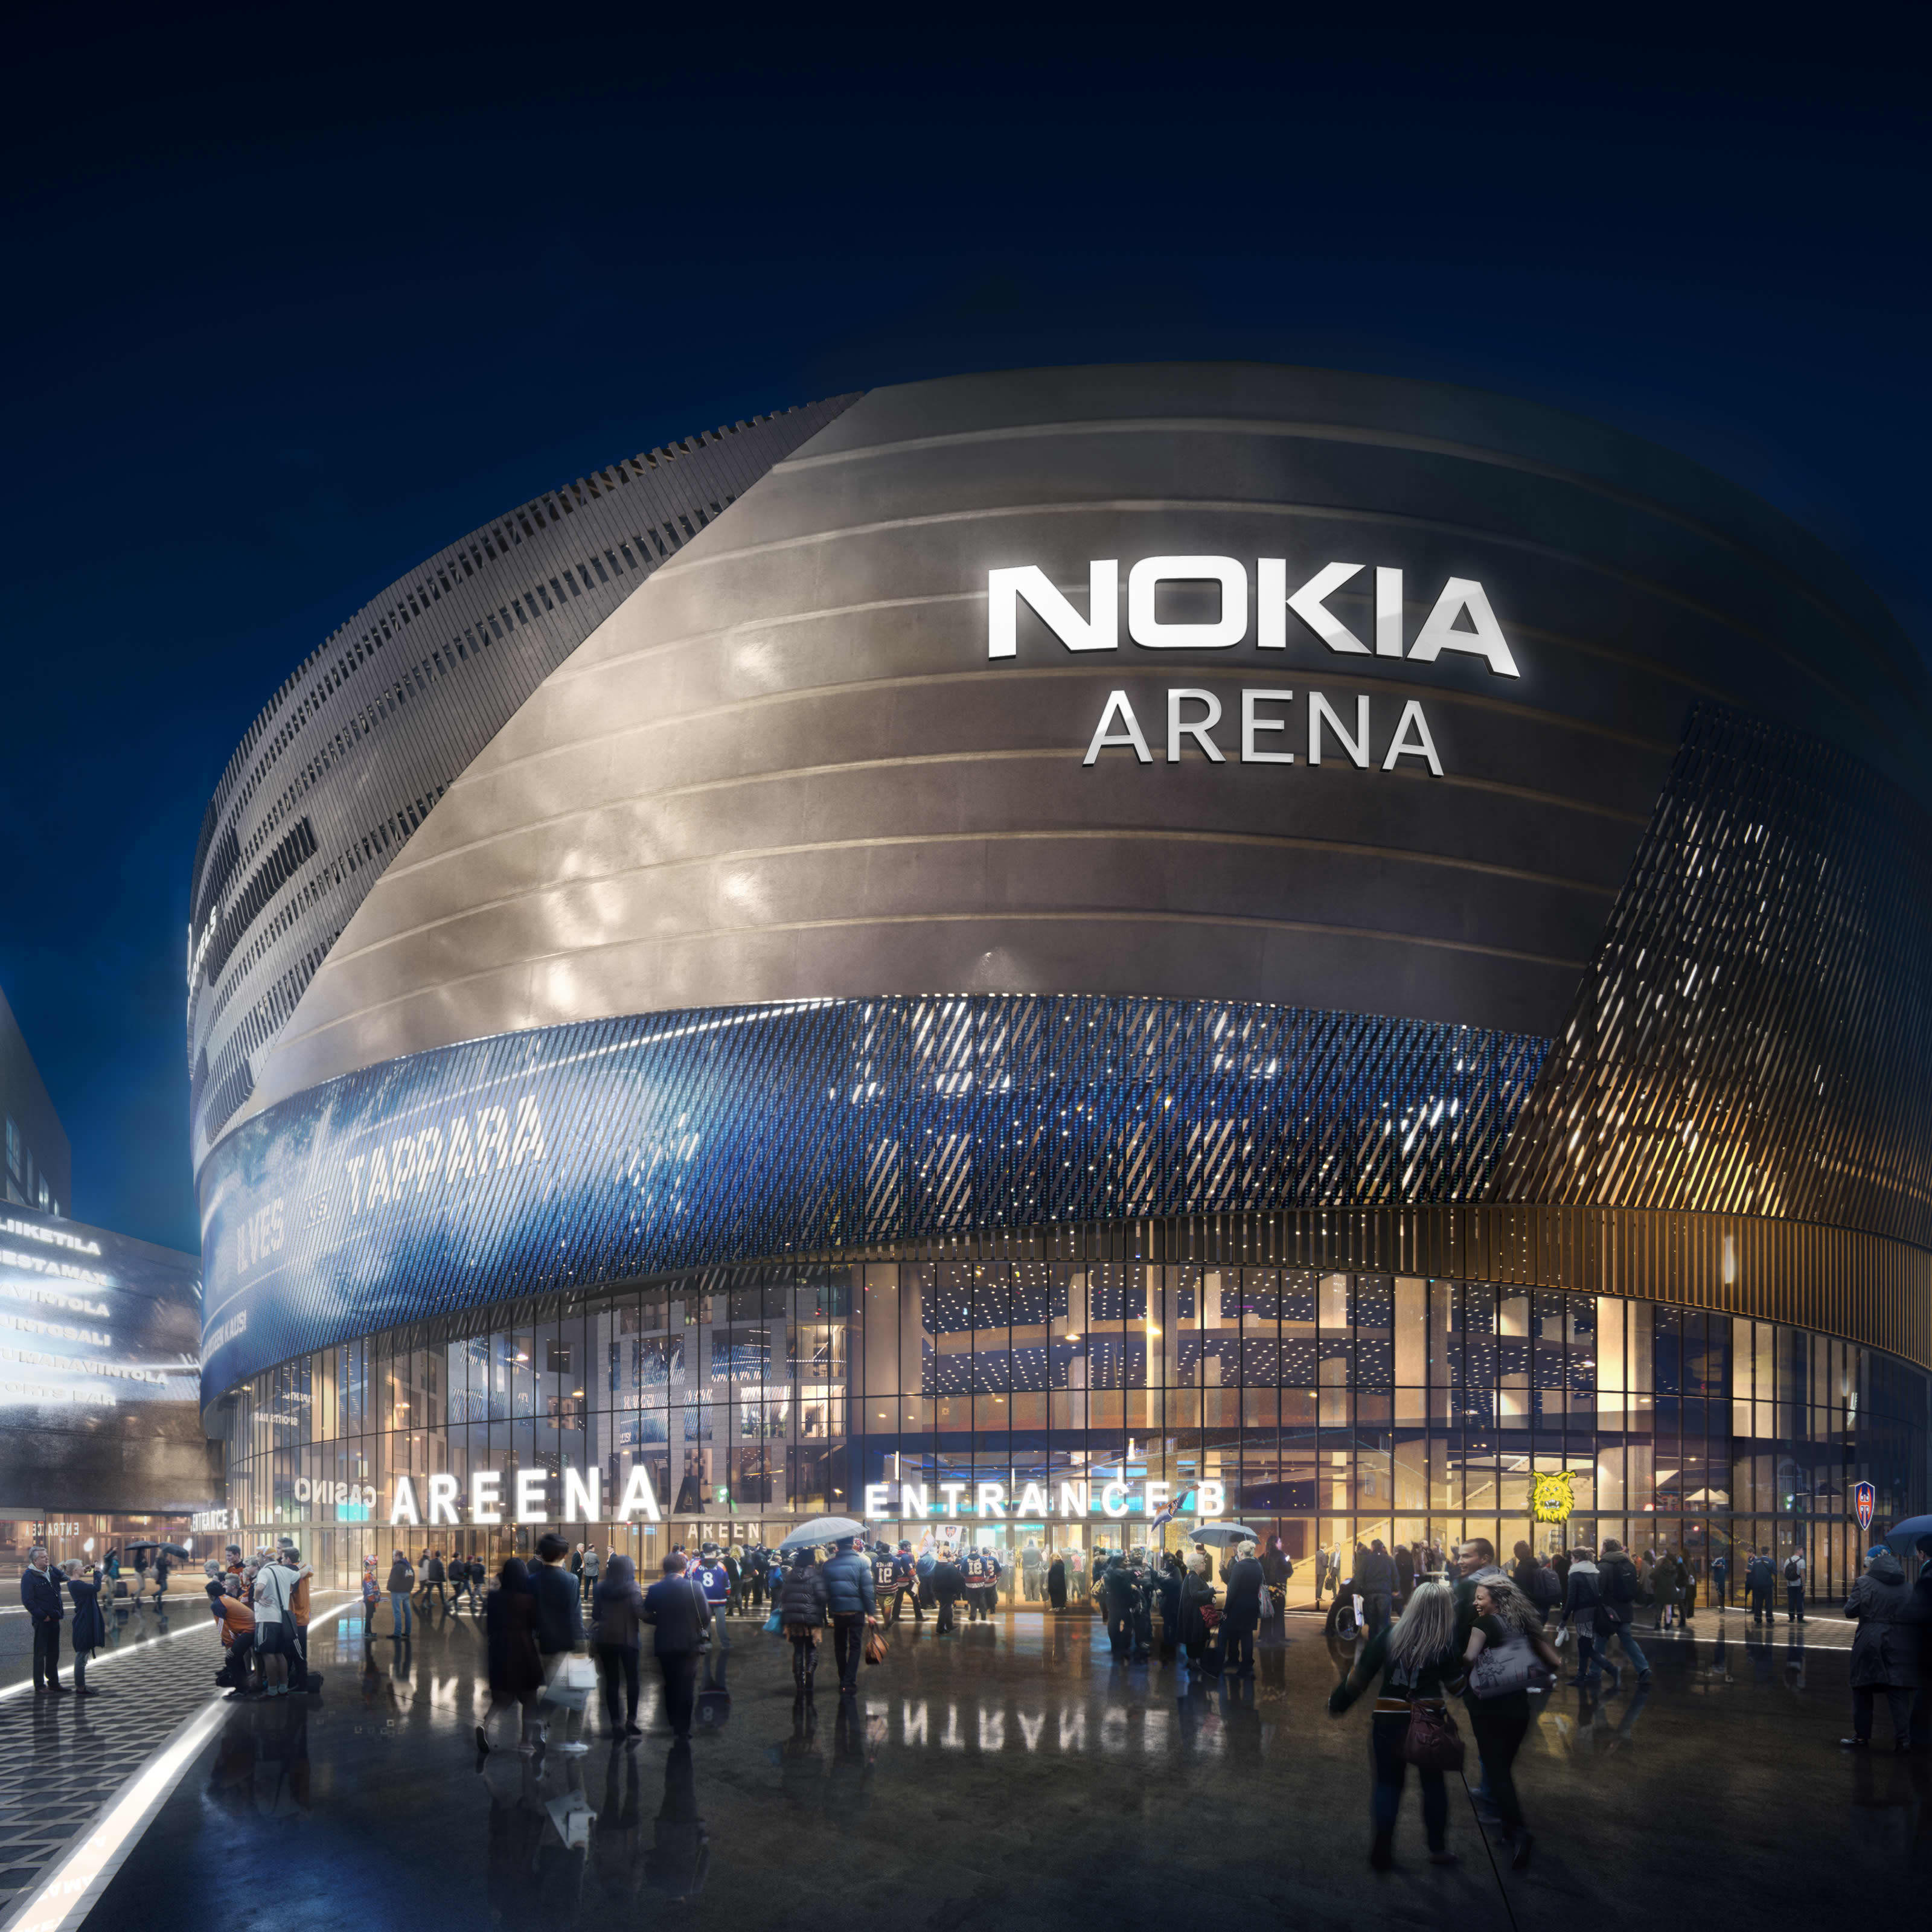 Havainnekuvassa valmistunut areena ja sen kyljessä valokirjaimin Nokian logo.